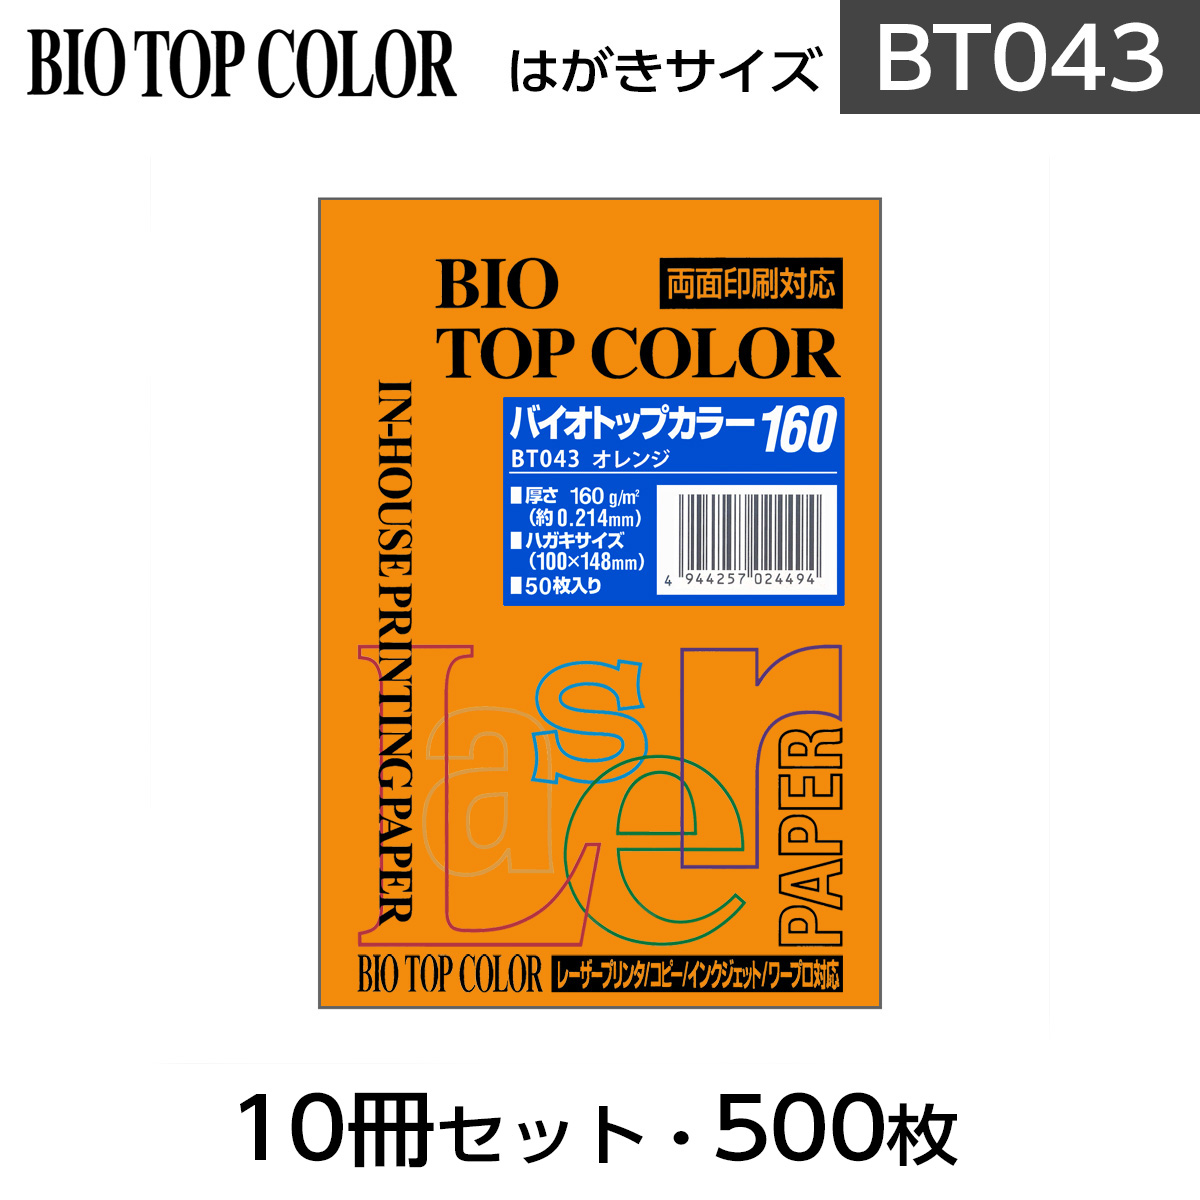 品質が 10冊セット 伊東屋 バイオトップカラー BT043<br>オレンジ はがきサイズ 160g m2 50枚入り<br>Itoya mondi  BIO TOP COLOR